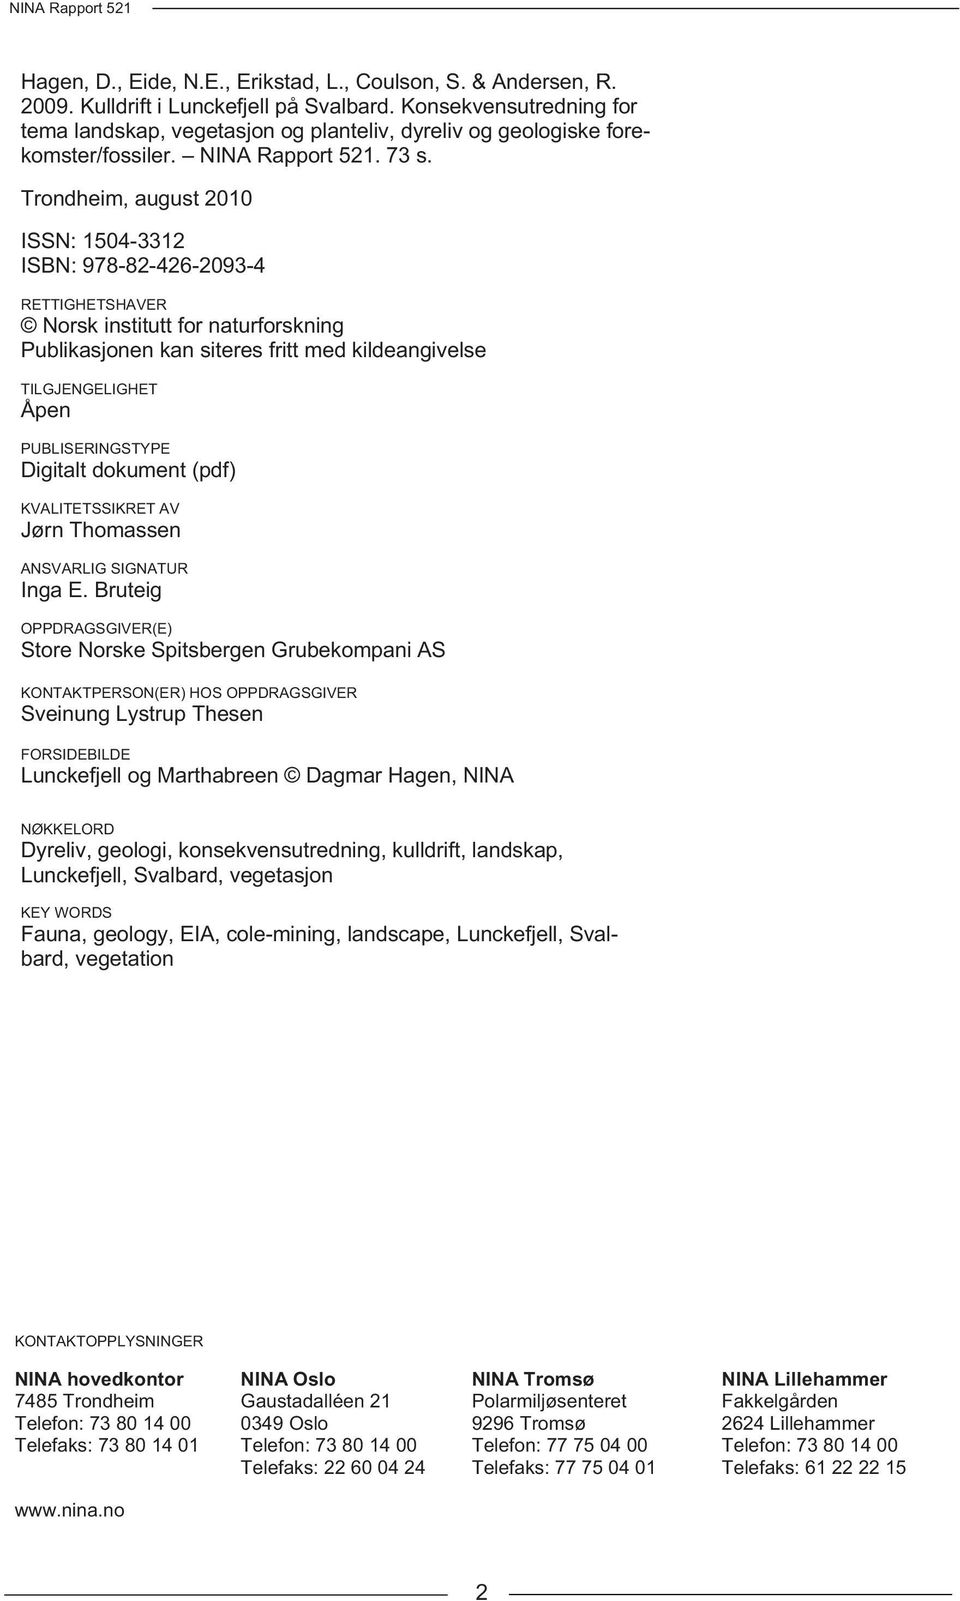 Trondheim, august 2010 ISSN: 1504-3312 ISBN: 978-82-426-2093-4 RETTIGHETSHAVER Norsk institutt for naturforskning Publikasjonen kan siteres fritt med kildeangivelse TILGJENGELIGHET Åpen